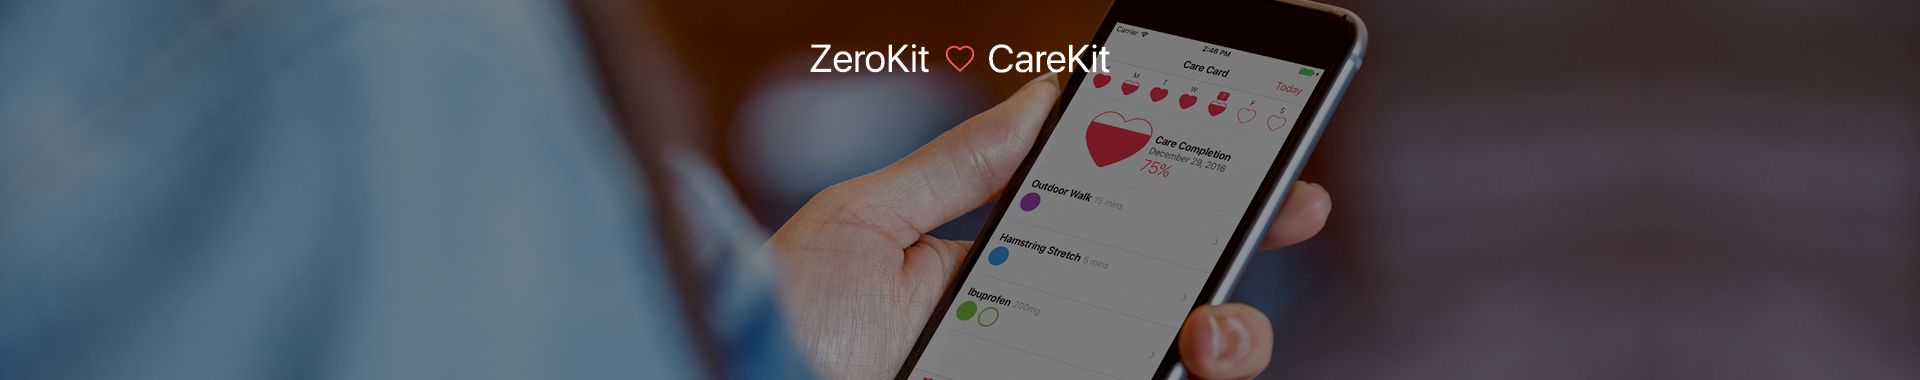 ZeroKit hilft Health-App-Entwicklern beim Verschlüsseln von Gesundheitsdaten